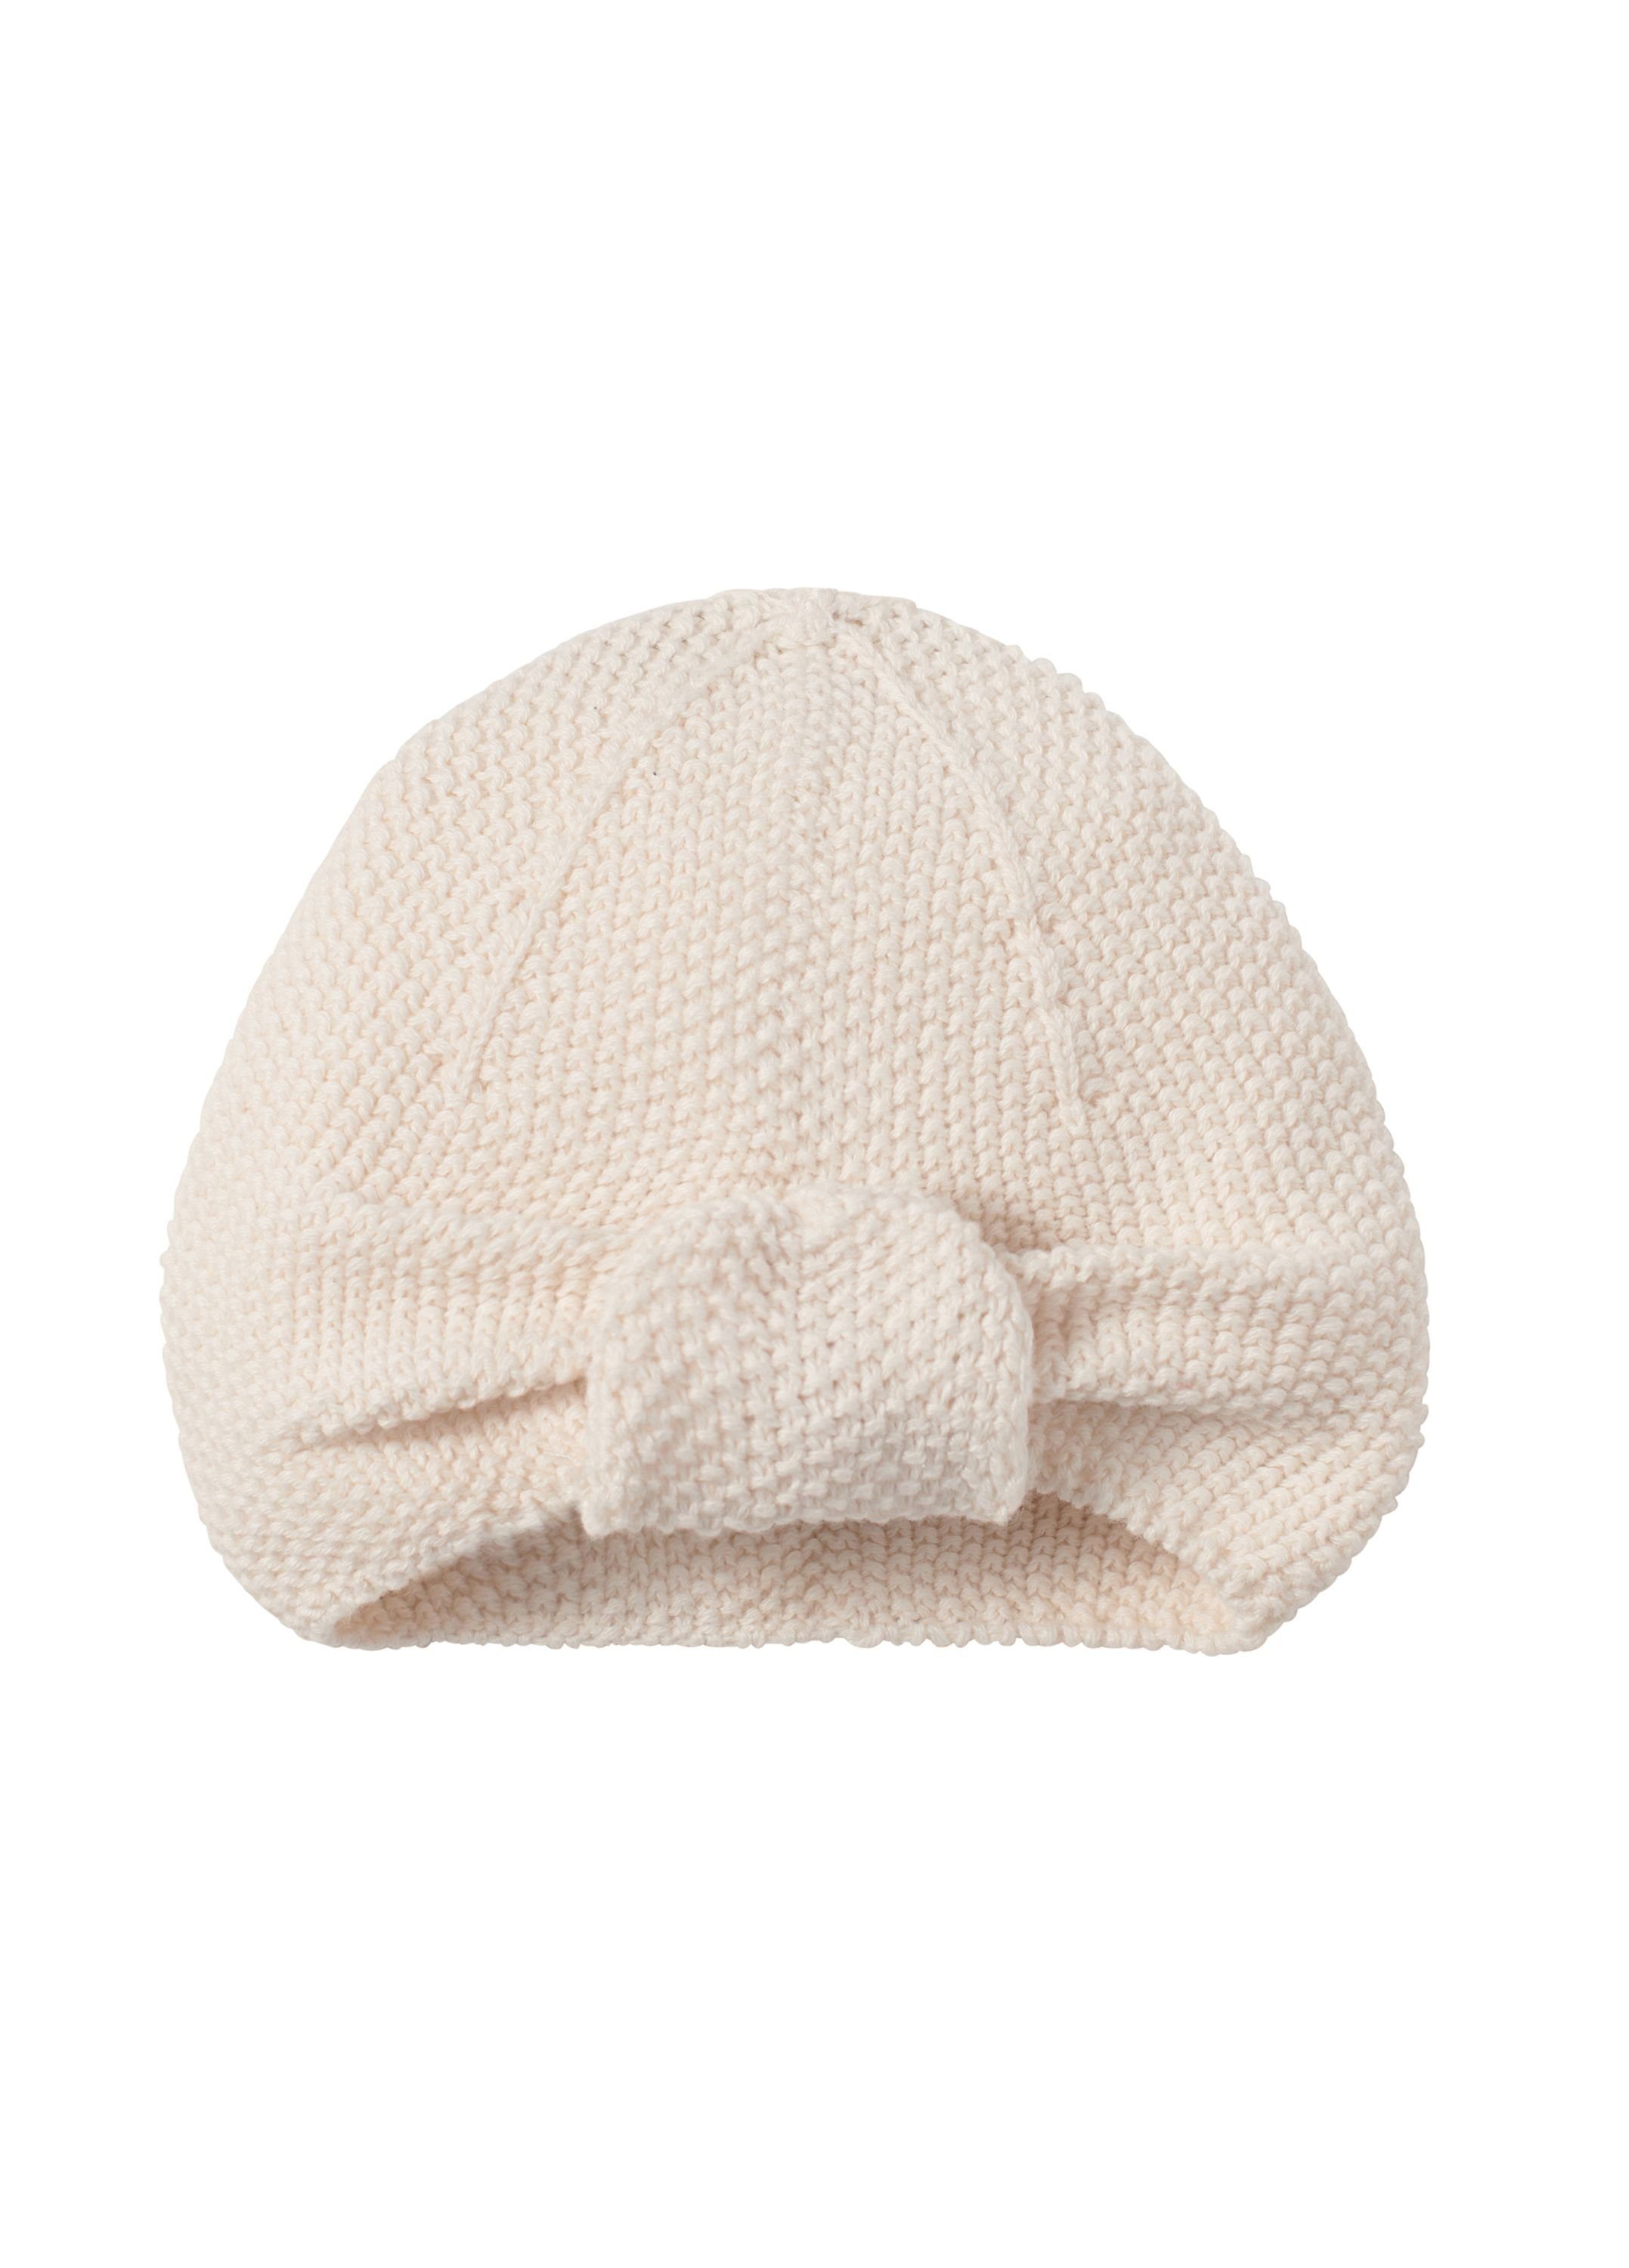 Geschenk - ideal für ab Geburt Company 100% Weiß als Coast Turban Natur Mädchen Neugeborene Baumwolle Turbanmütze Baby Nordic Strickmütze